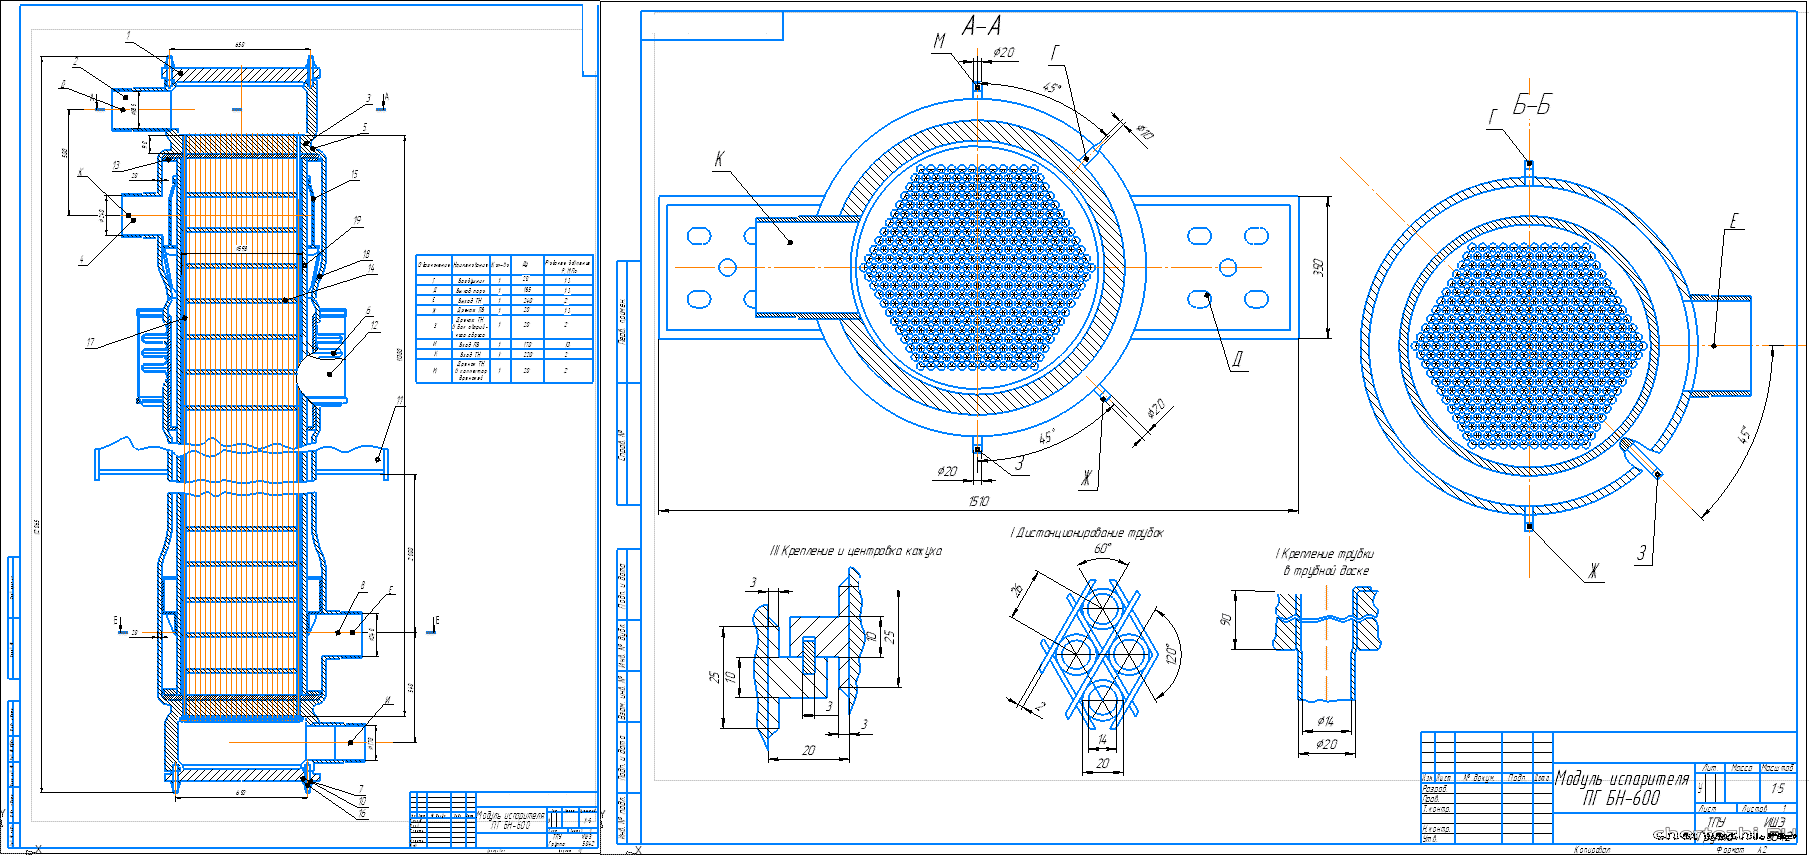 Курсовой проект - Проектирование модуля испарителя парогенератора реактора БН-600